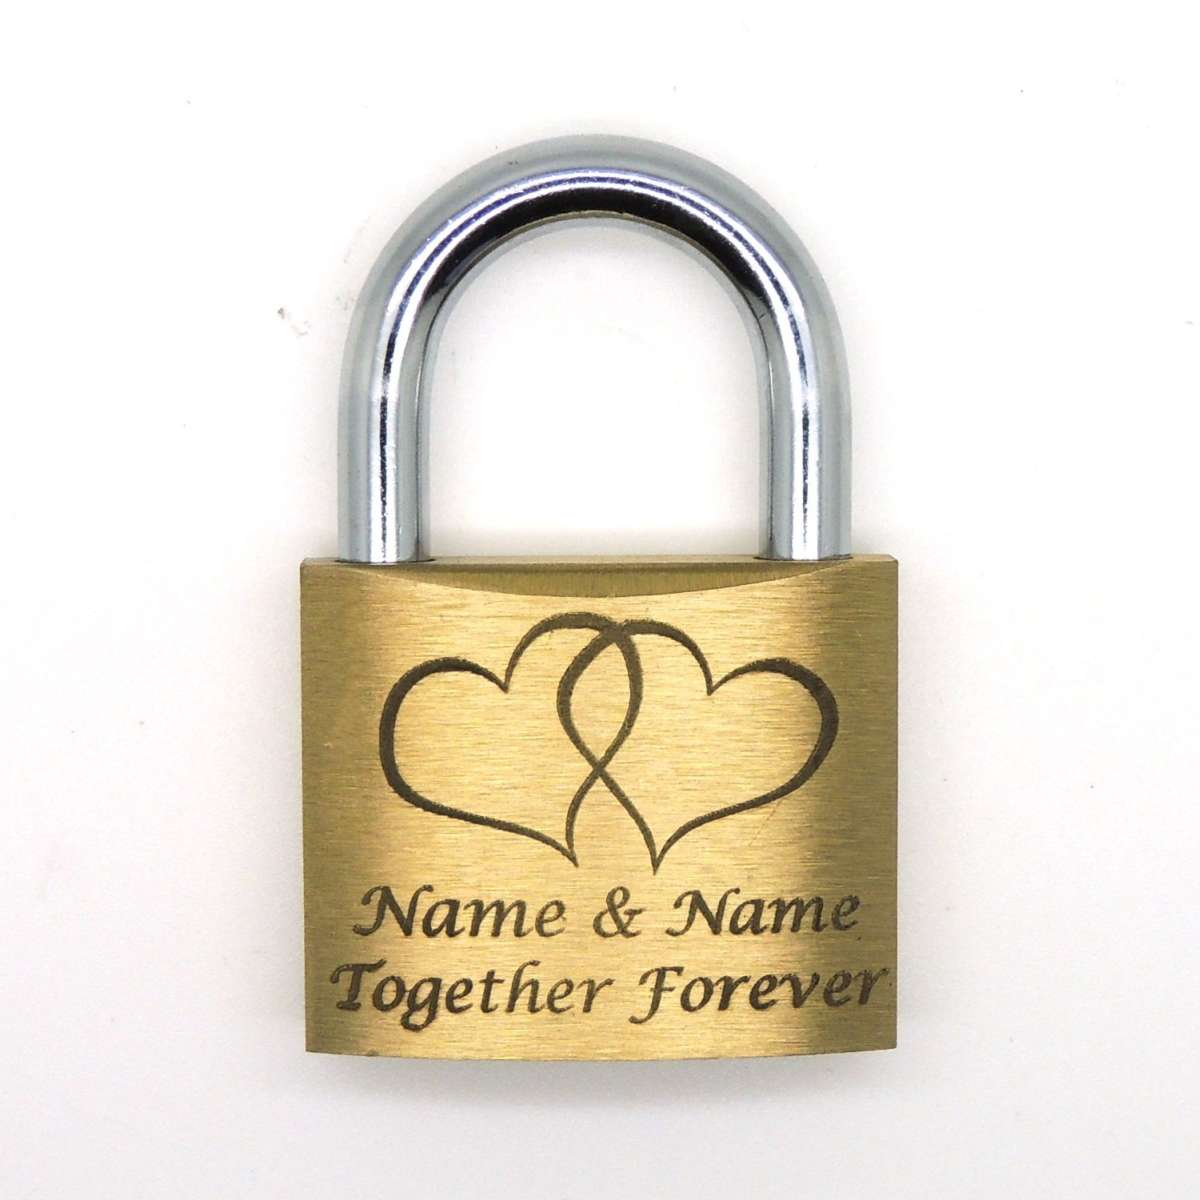 Personalised engraved love lock